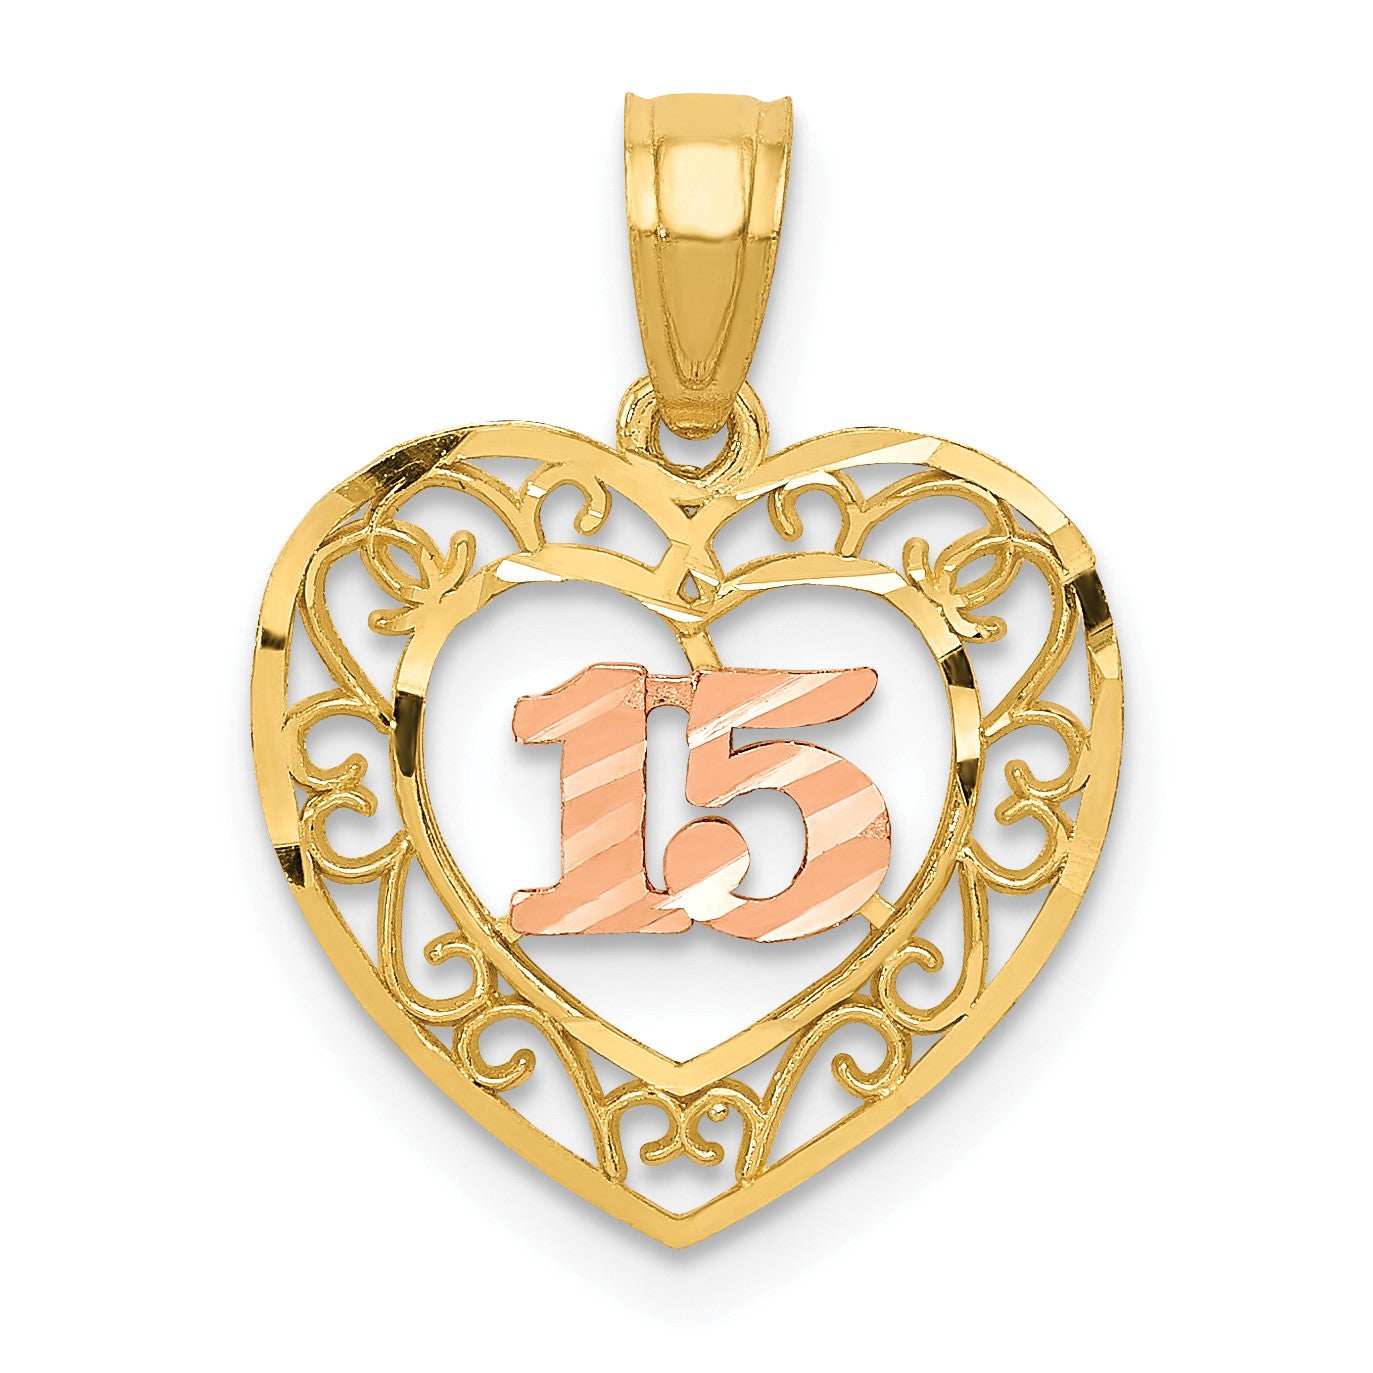 925 Sterling Silver 15 Años Quinceañera Heart Pendant Necklace